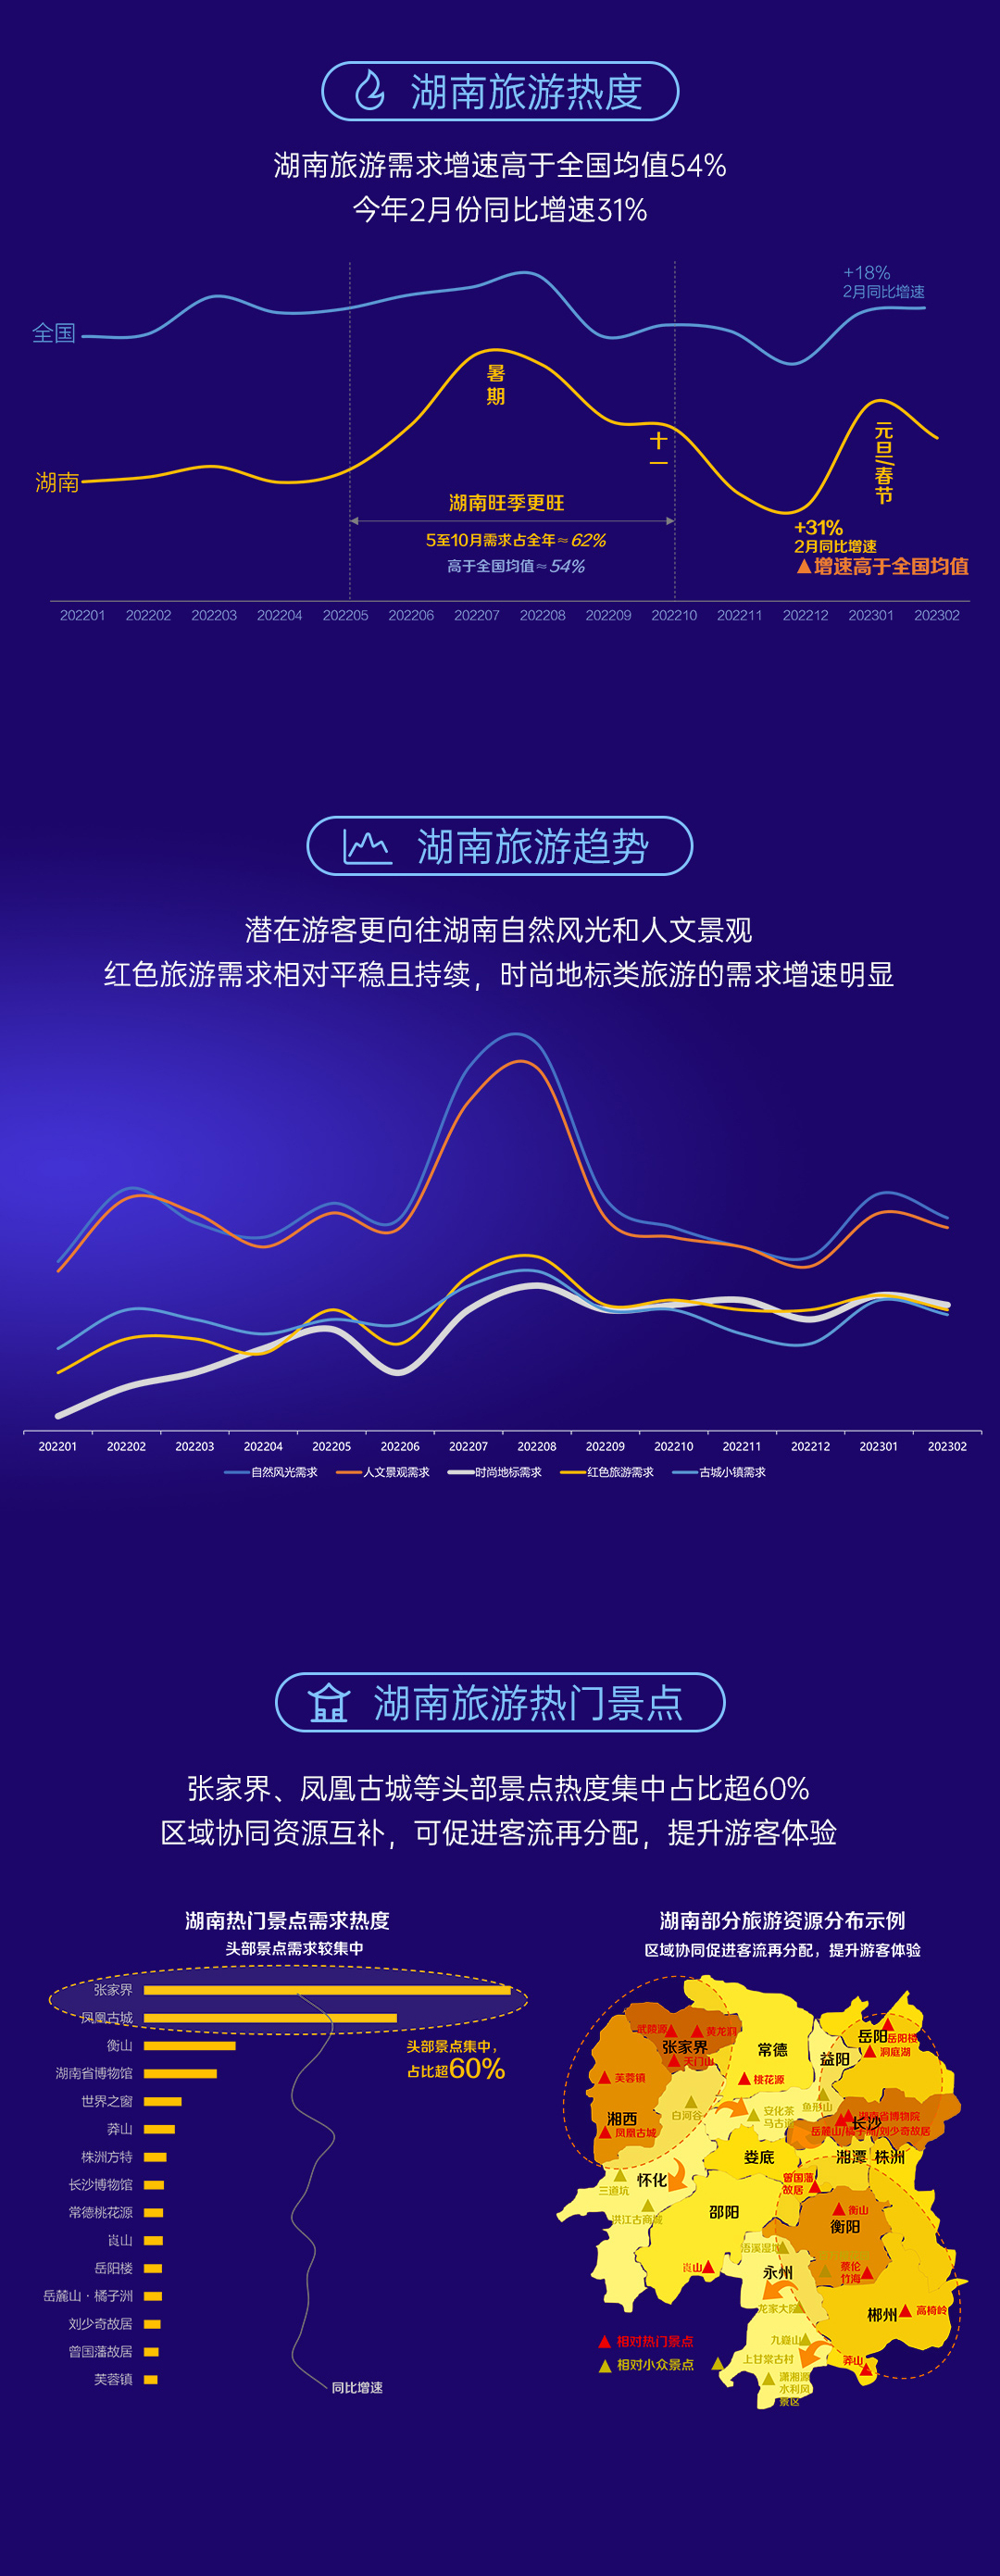 《数说湖南》百度搜索大数据报告发布，网民都在关注湖南哪些领域？